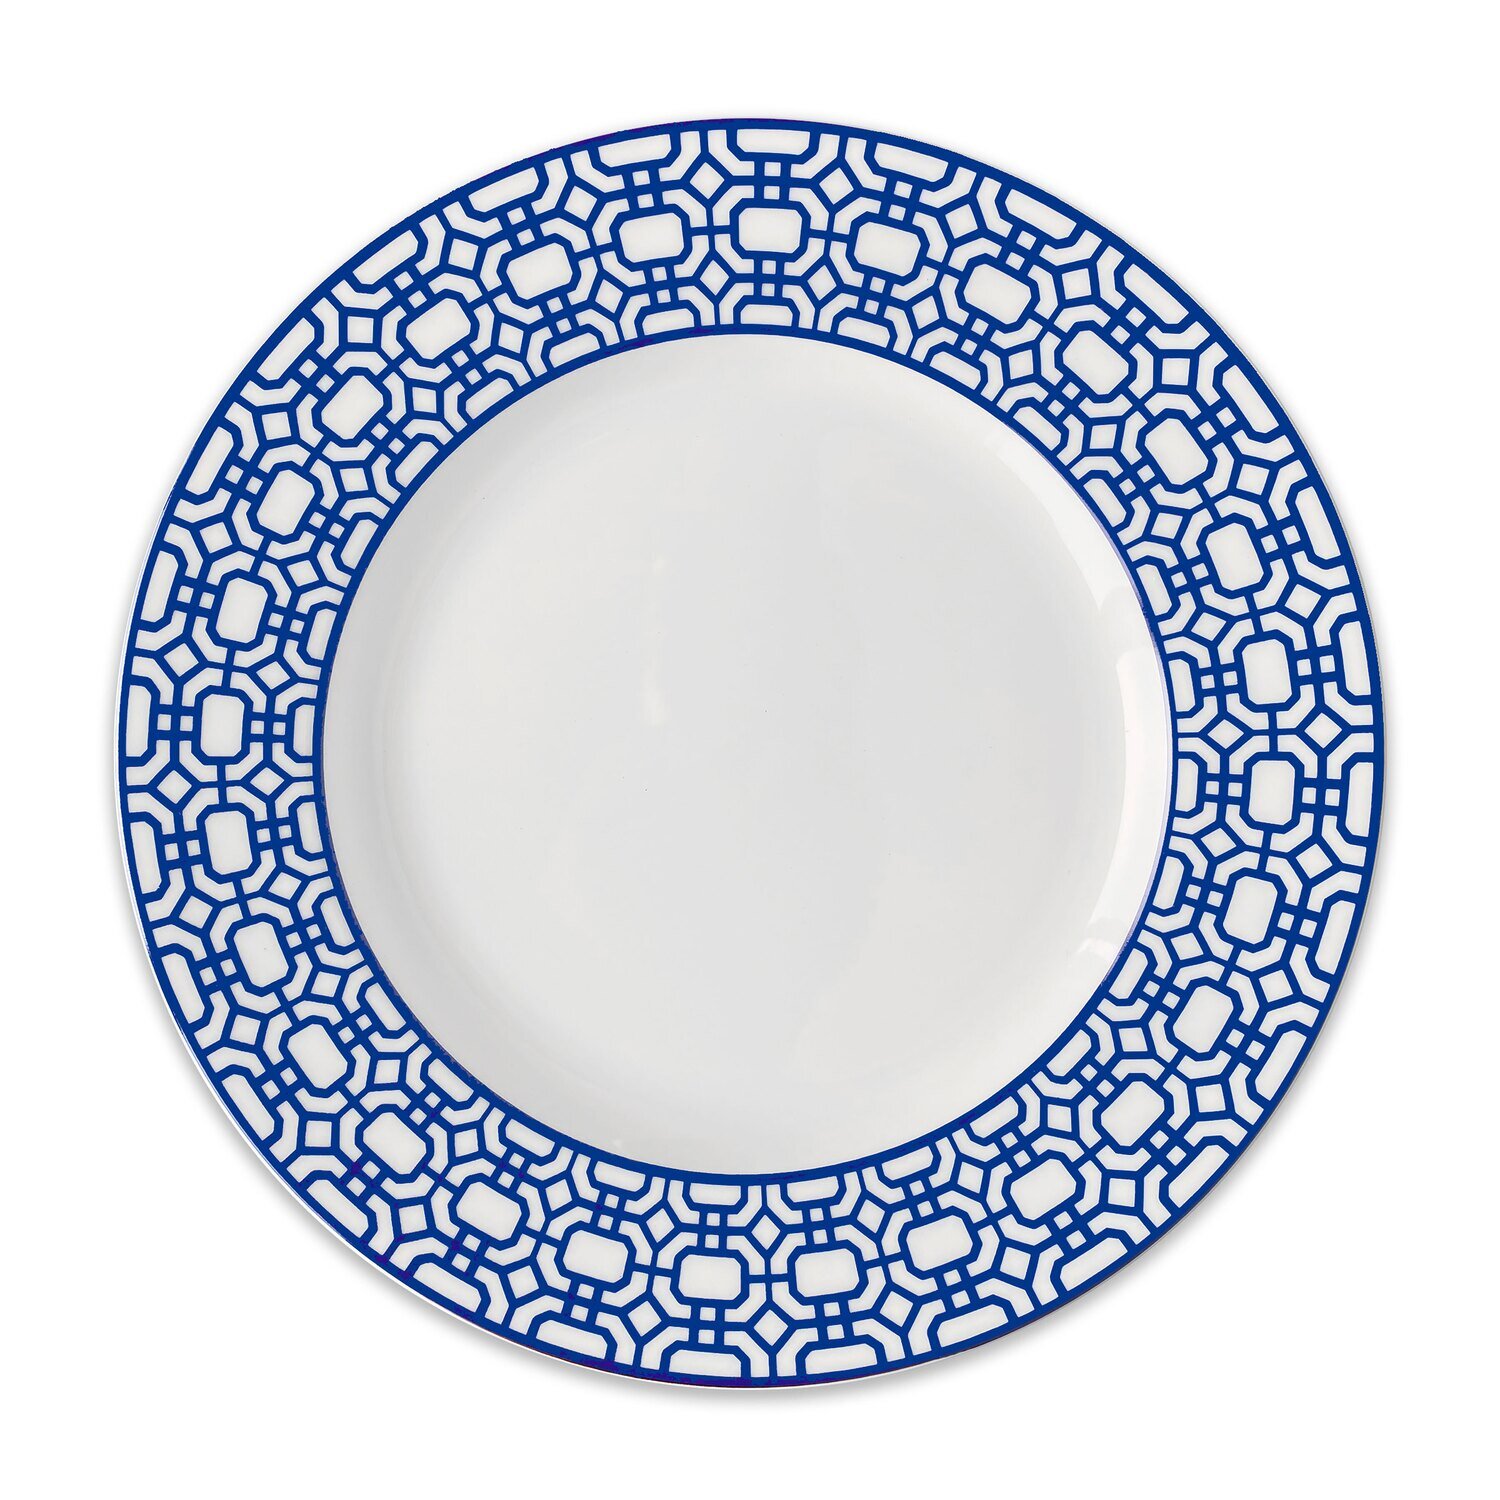 Caskata Newport Garden Gate Rimmed Dinner Plate Blue DINA-501